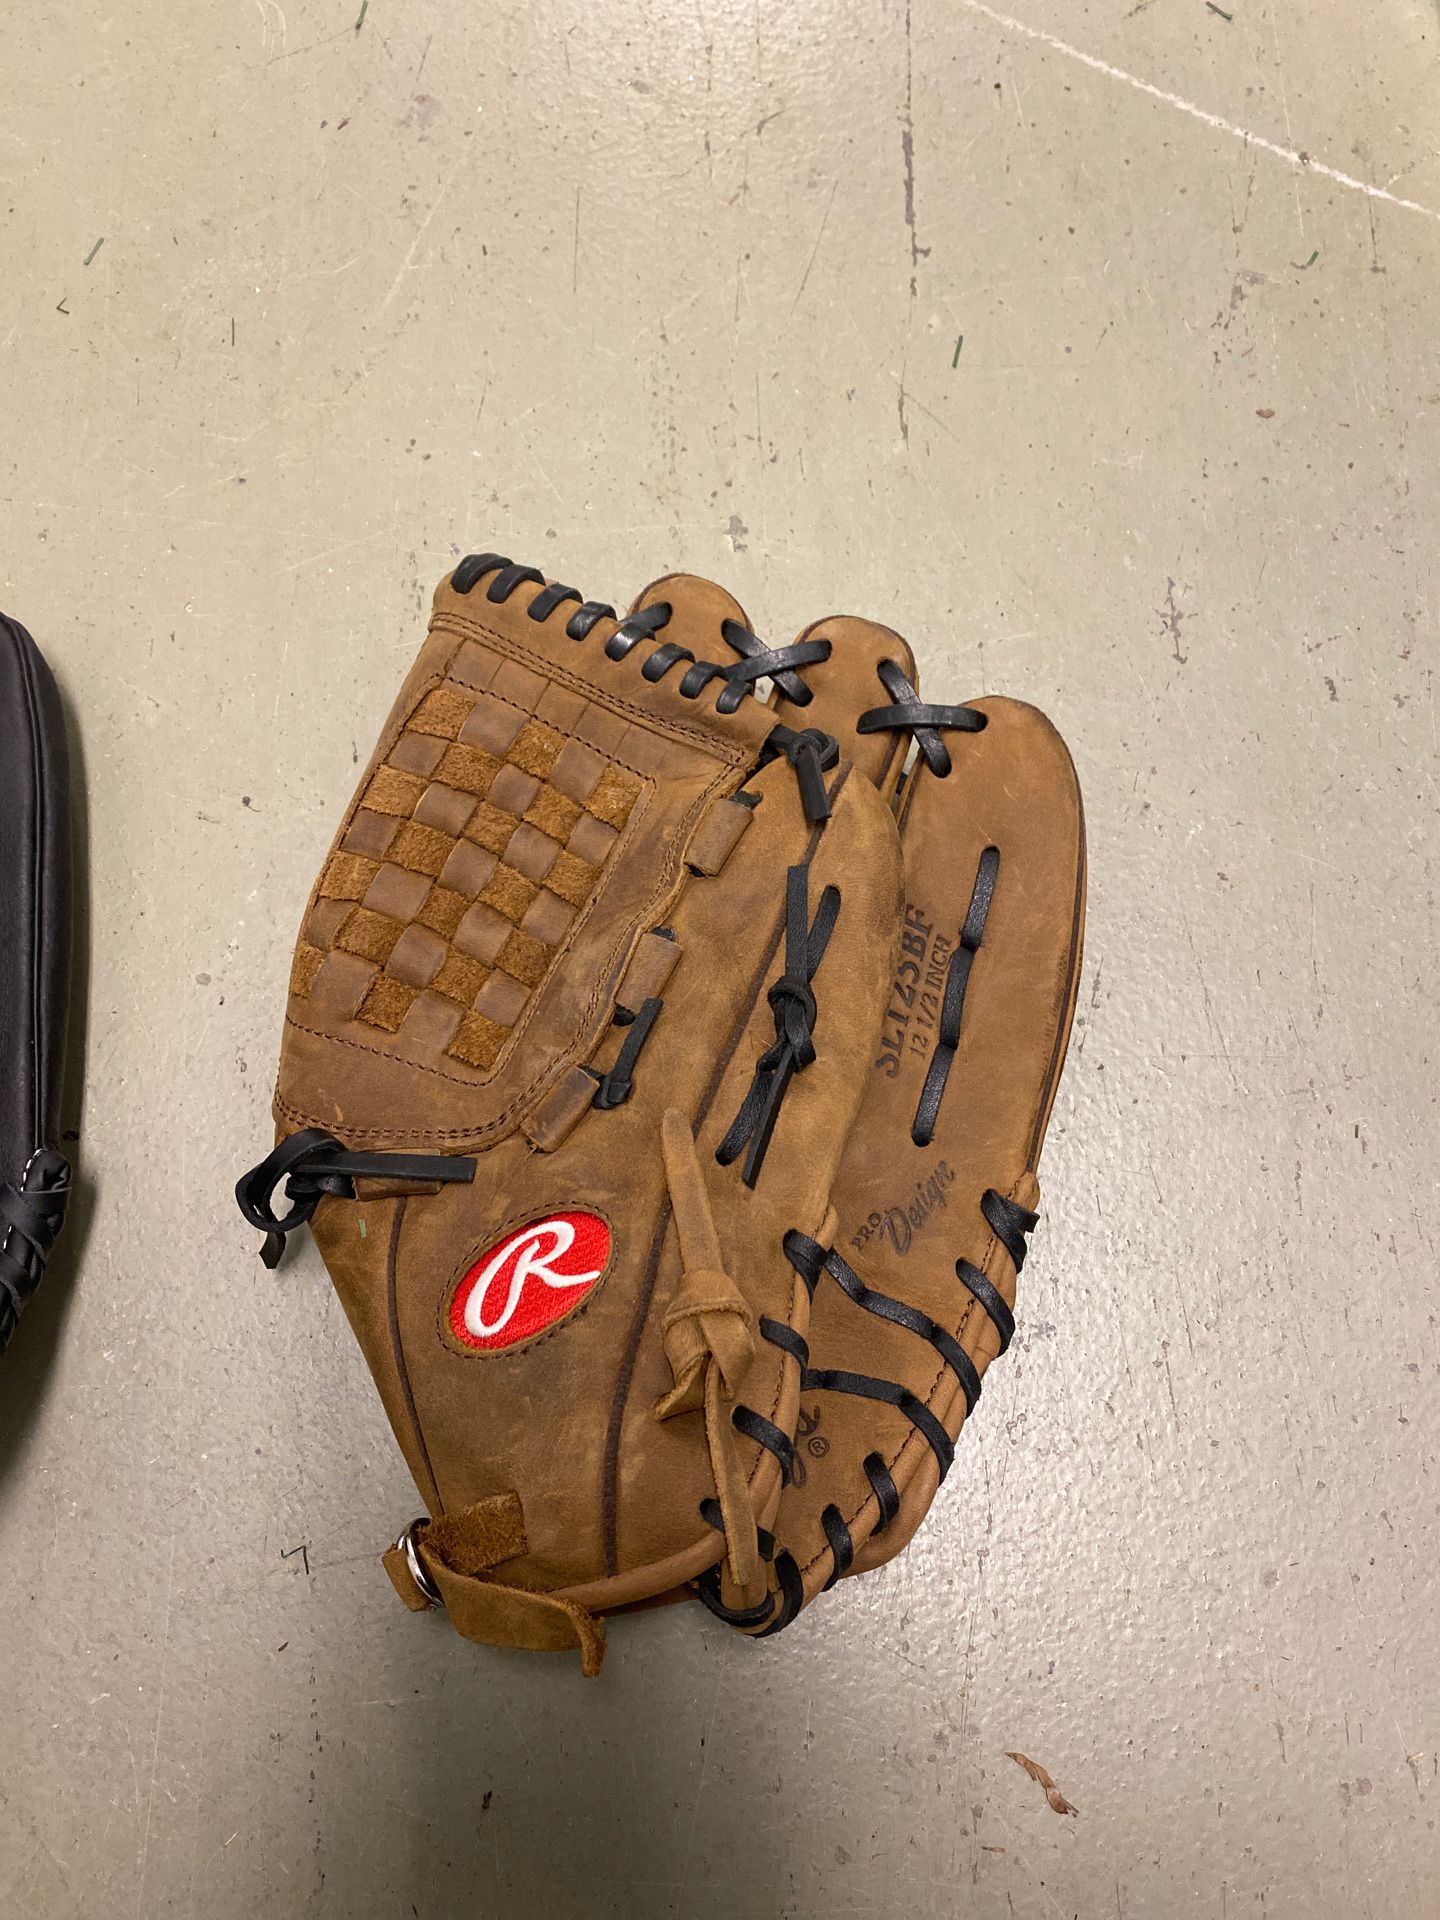 Rawlings baseball glove, leather